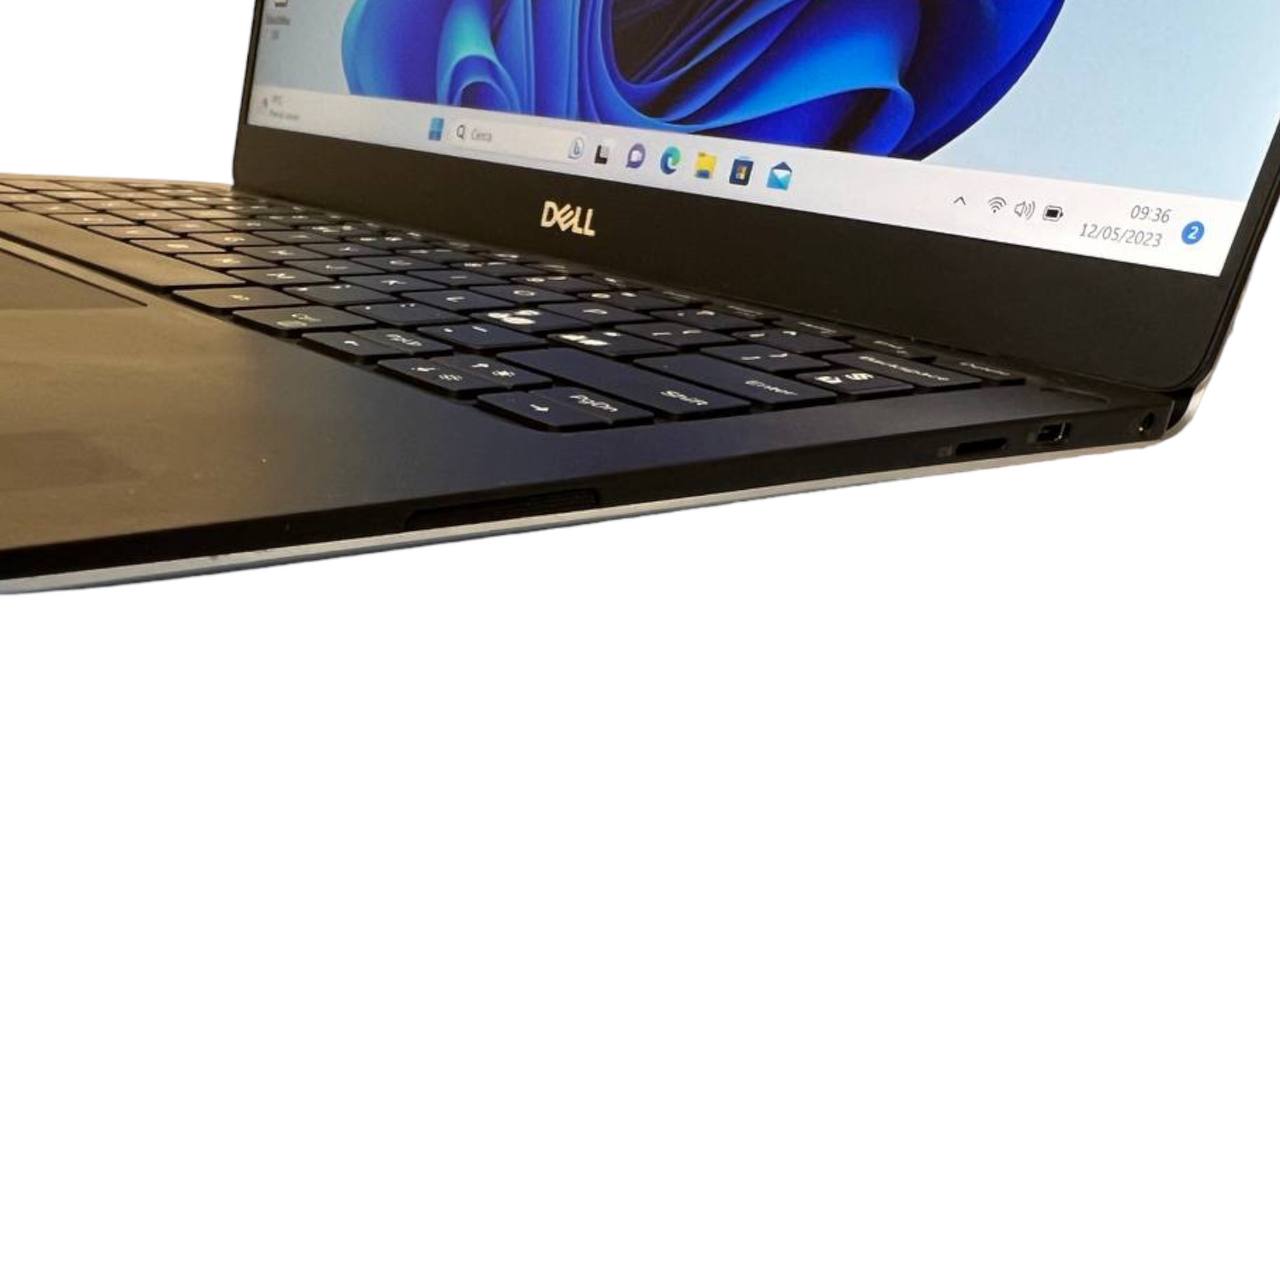 Dell XPS 13 7390 con Intel Core i5-10210U, 2379129R4